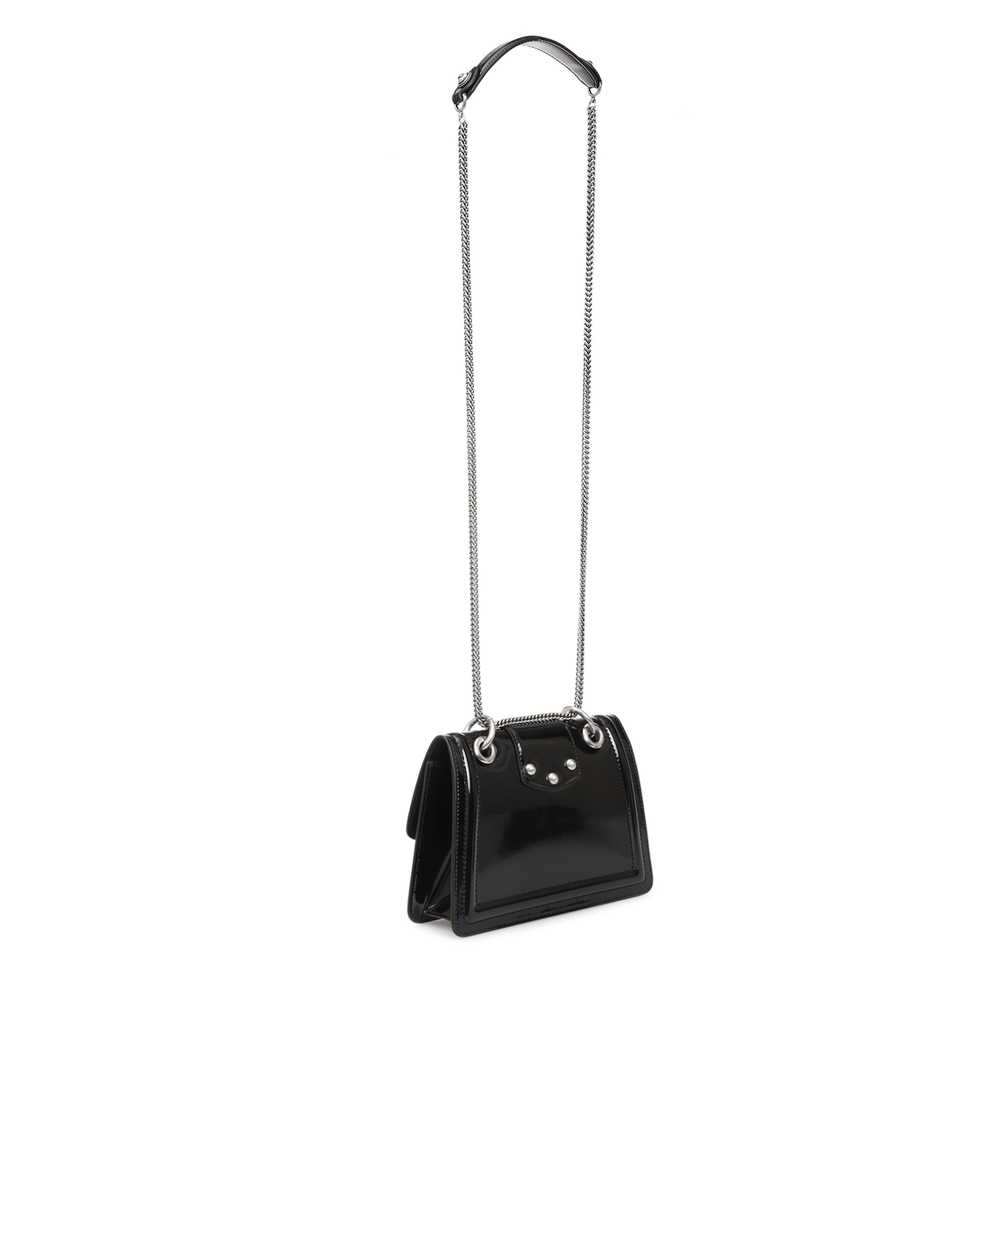 Кожаная сумка DG Amore Dolce&Gabbana BB6676-A1037, черный цвет • Купить в интернет-магазине Kameron